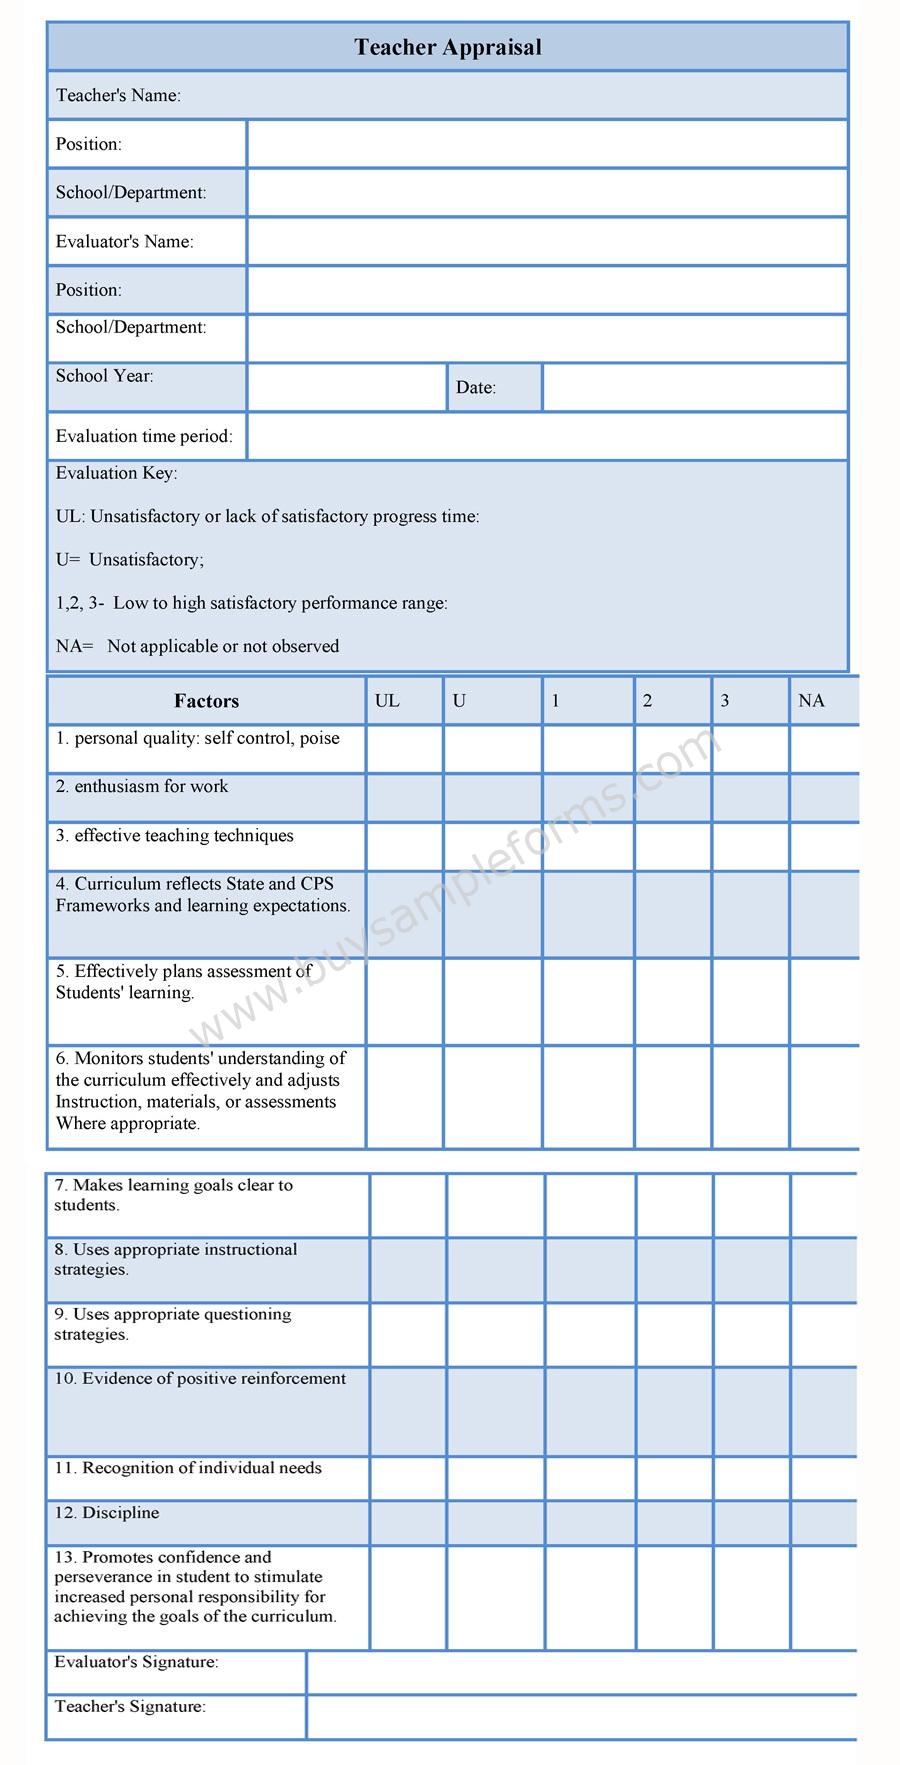 Teacher Appraisal Form